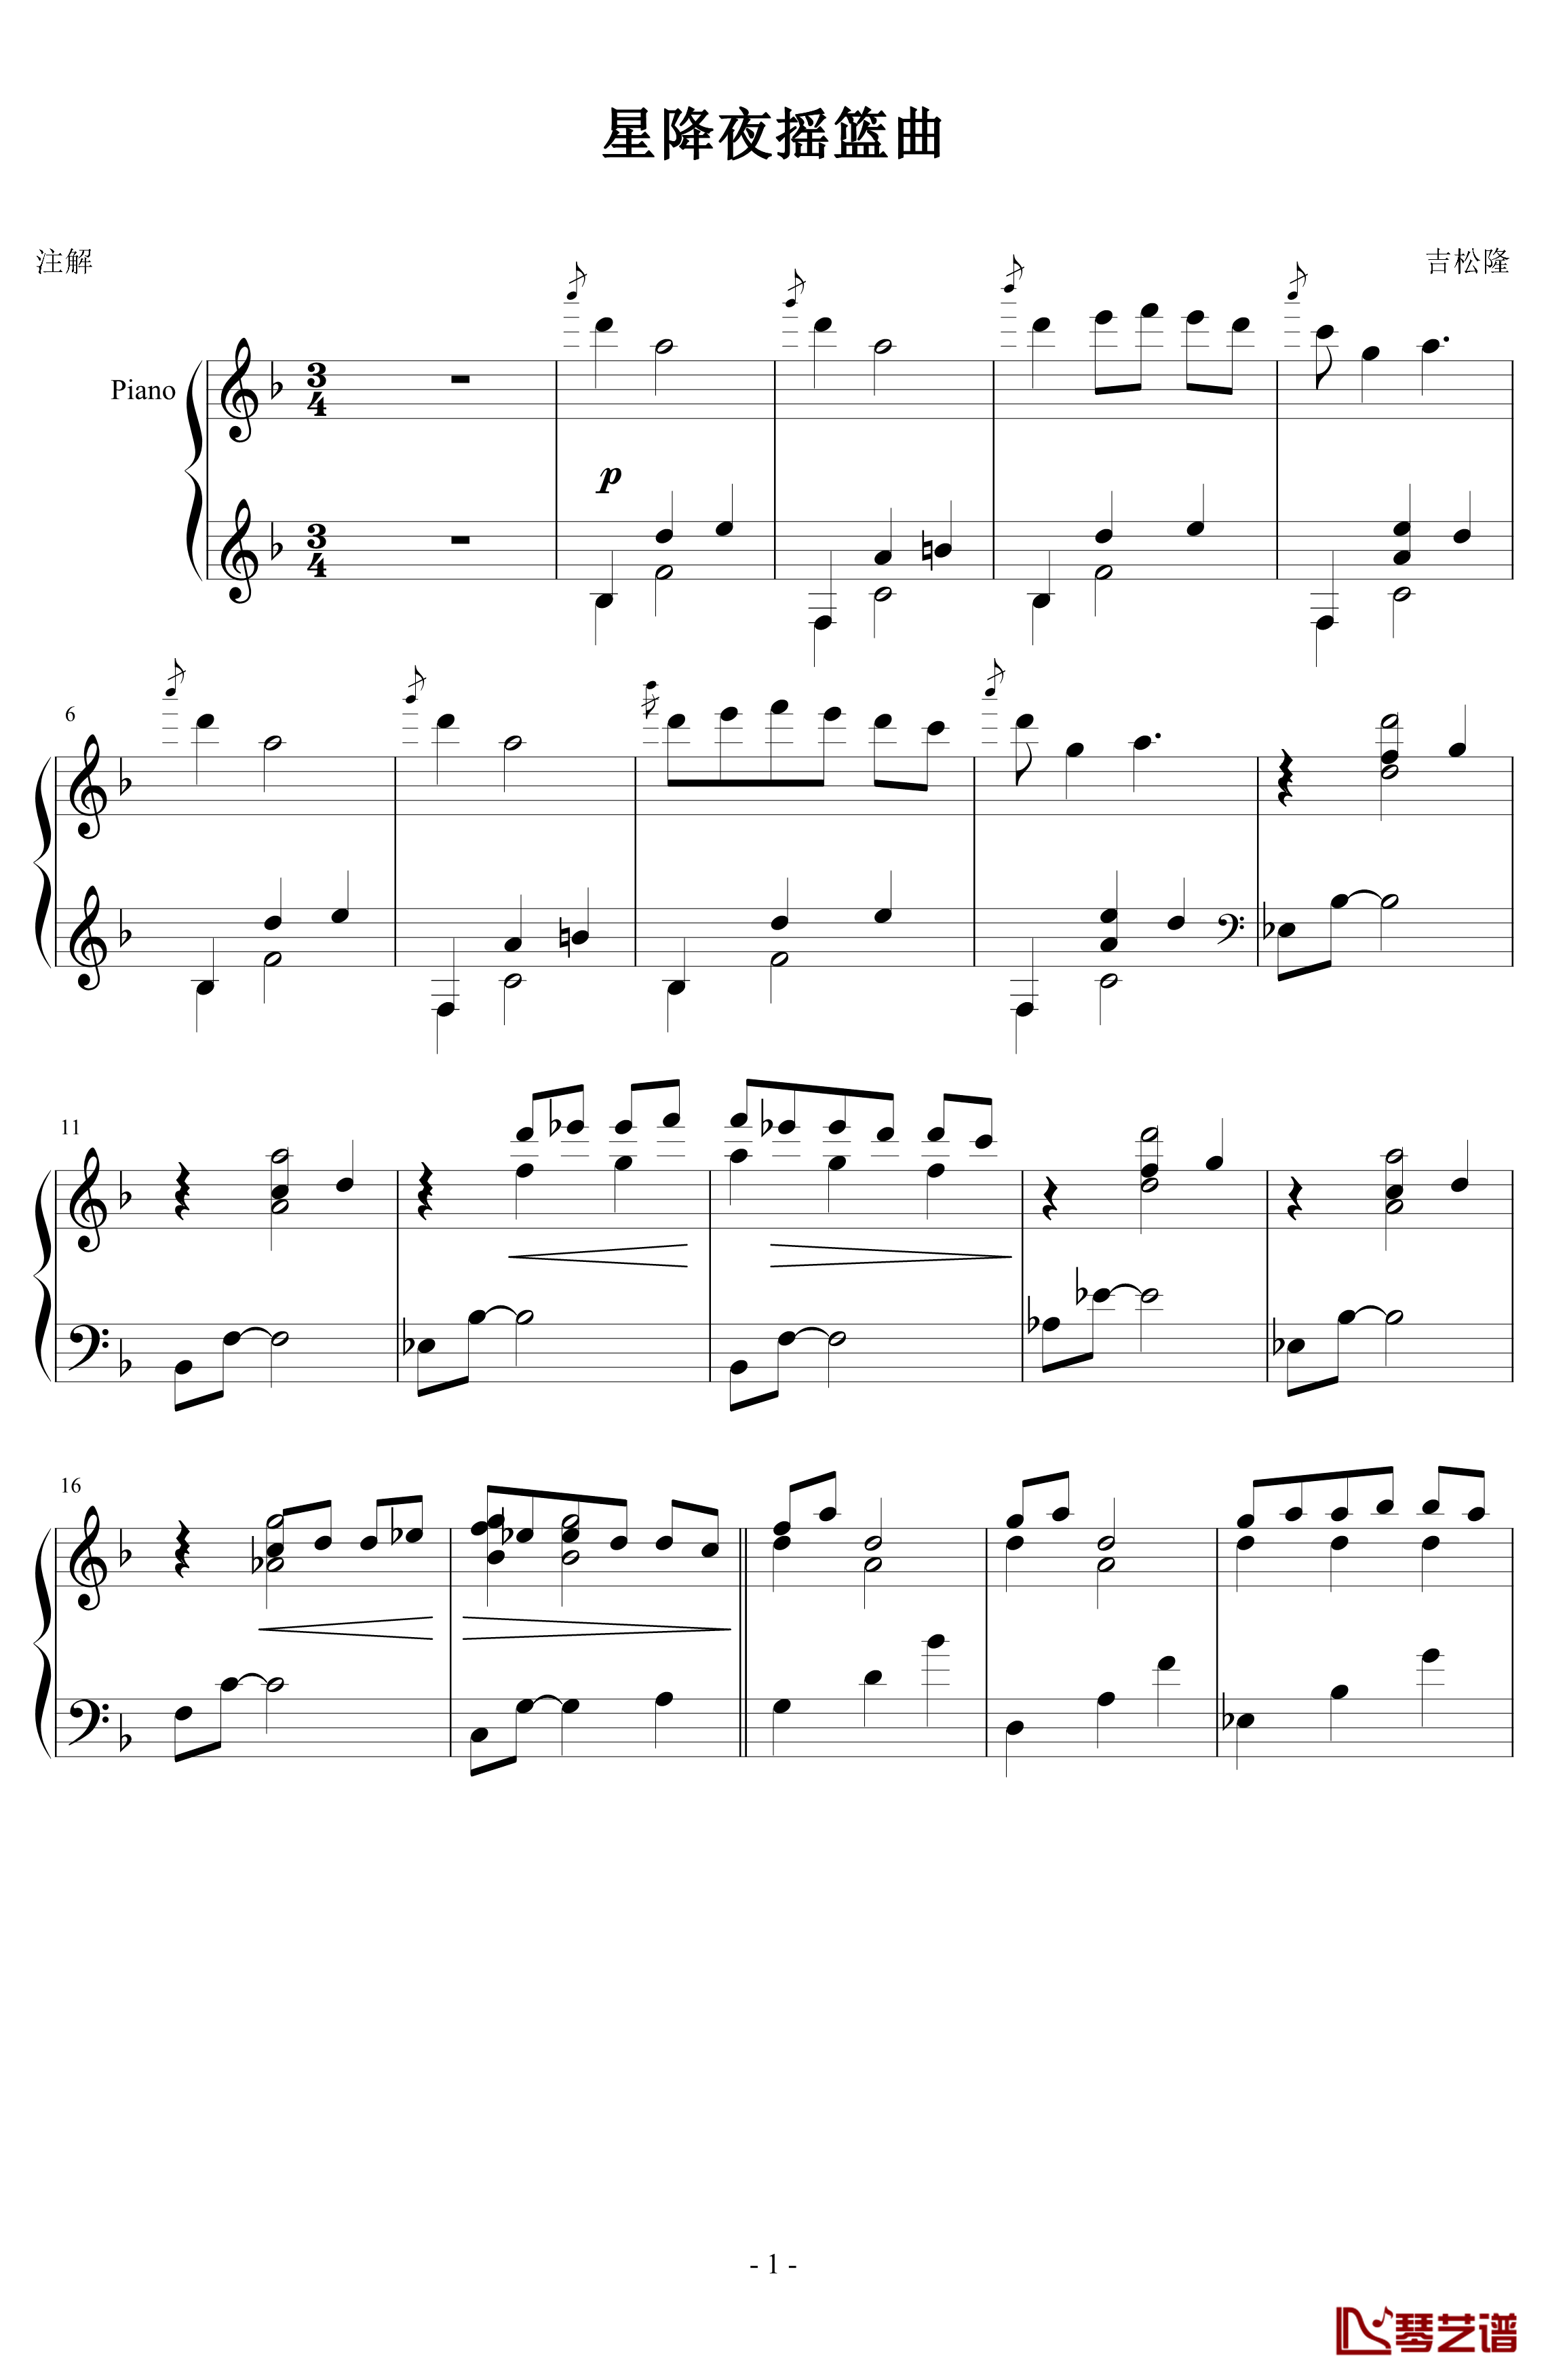 星降之夜的摇篮曲钢琴谱-吉松隆1